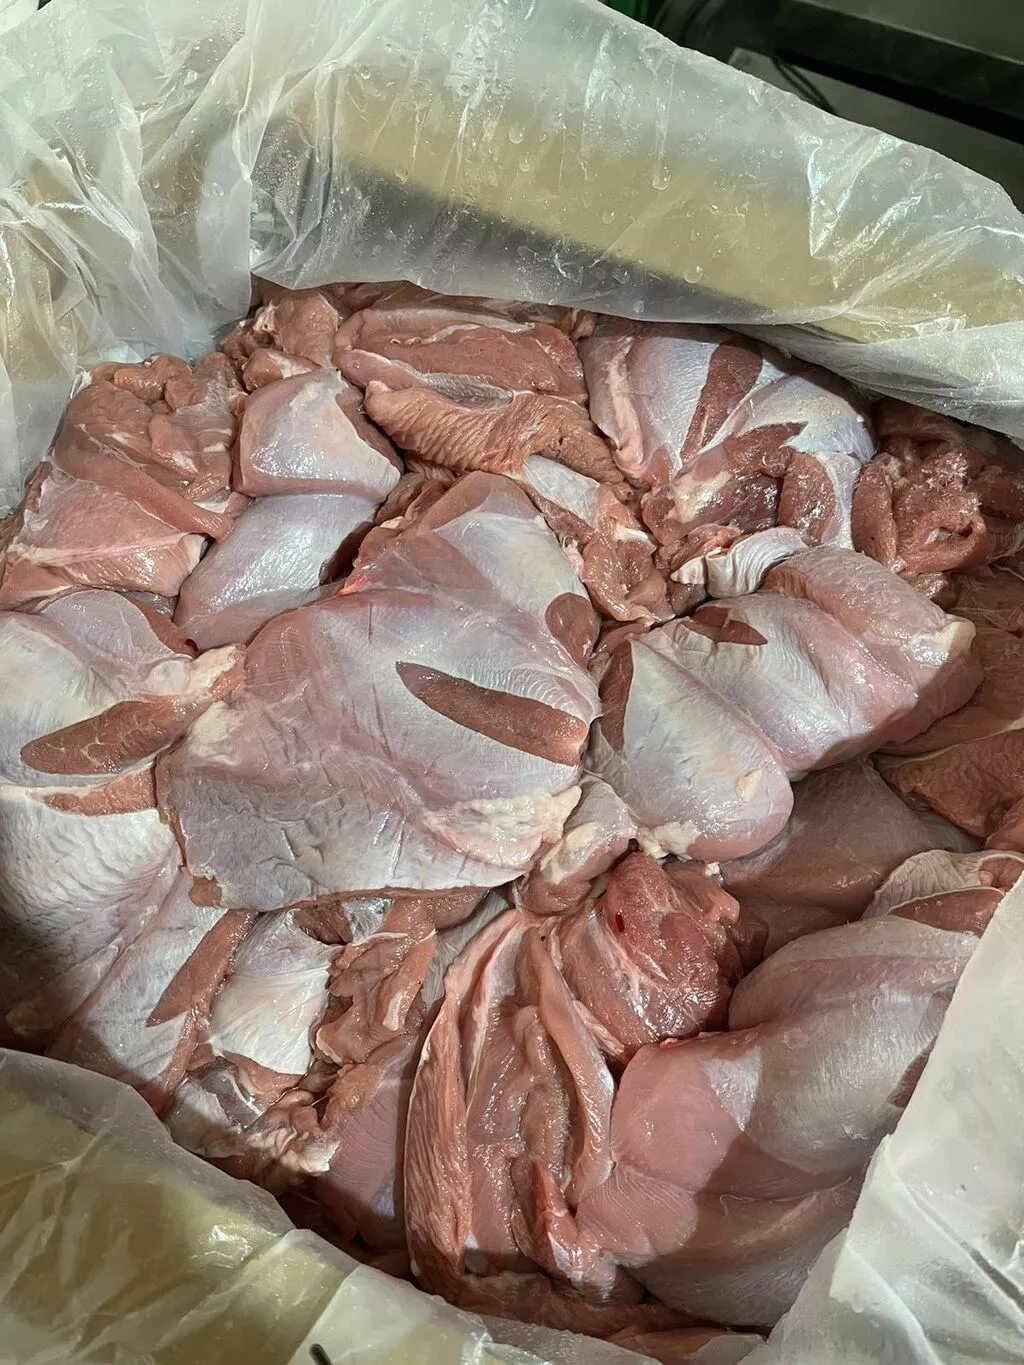 мясо индейки, свинины, говядины оптом  в Челябинске и Челябинской области 7